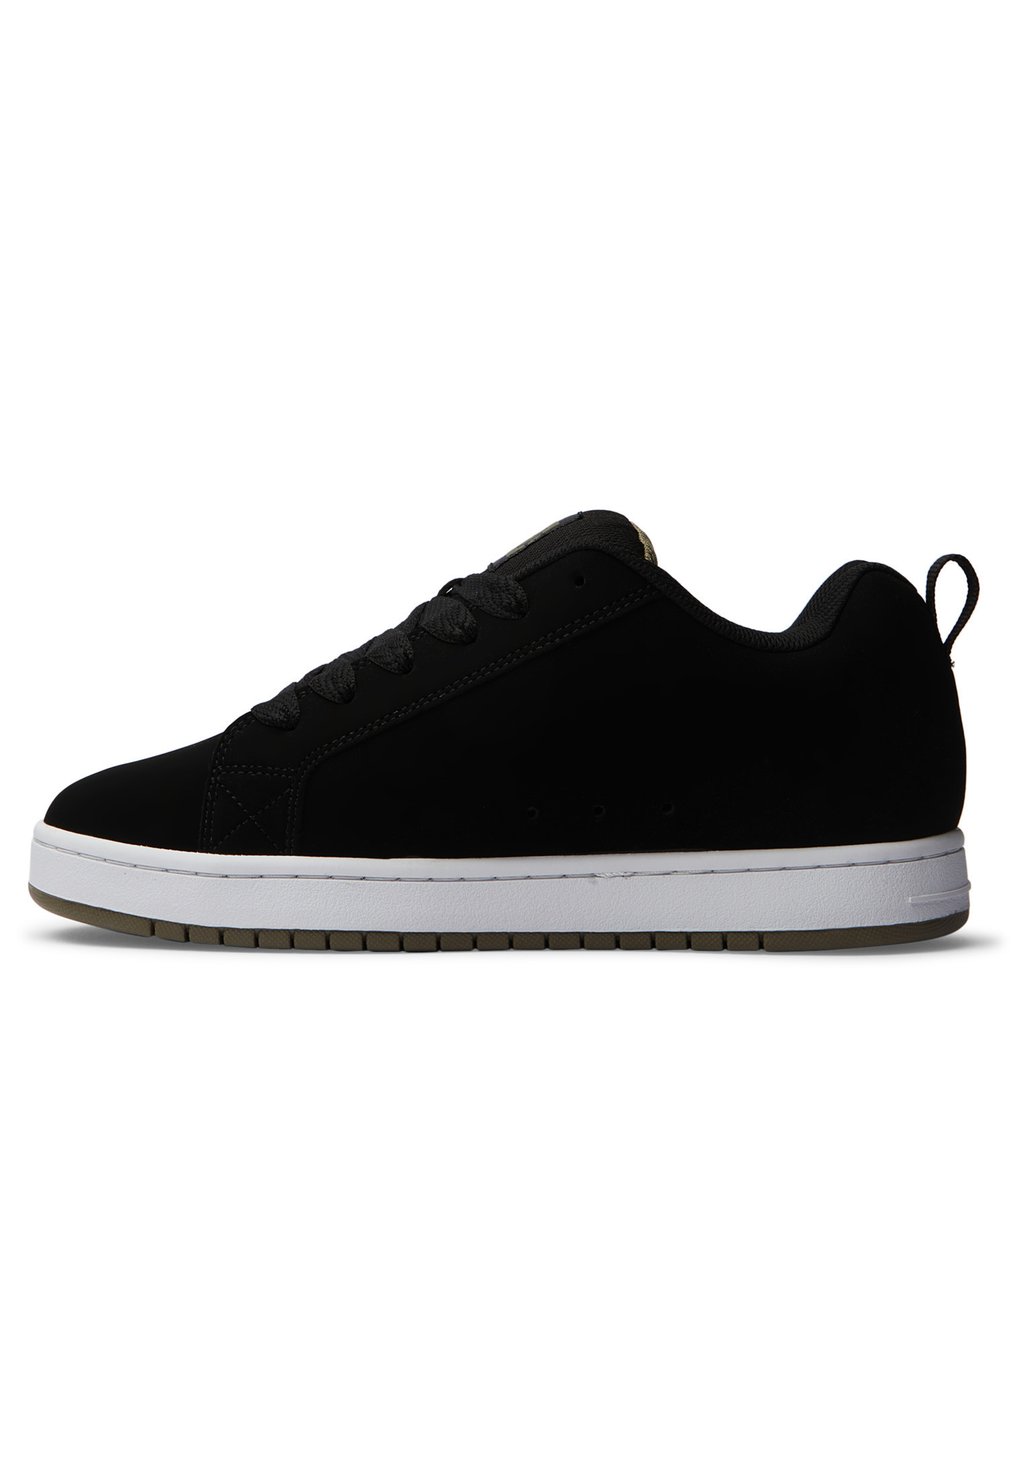 Кроссовки COURT GRAFFIK Dc Shoes, черный кроссовки dc shoes court graffik unisex black multi coloured white